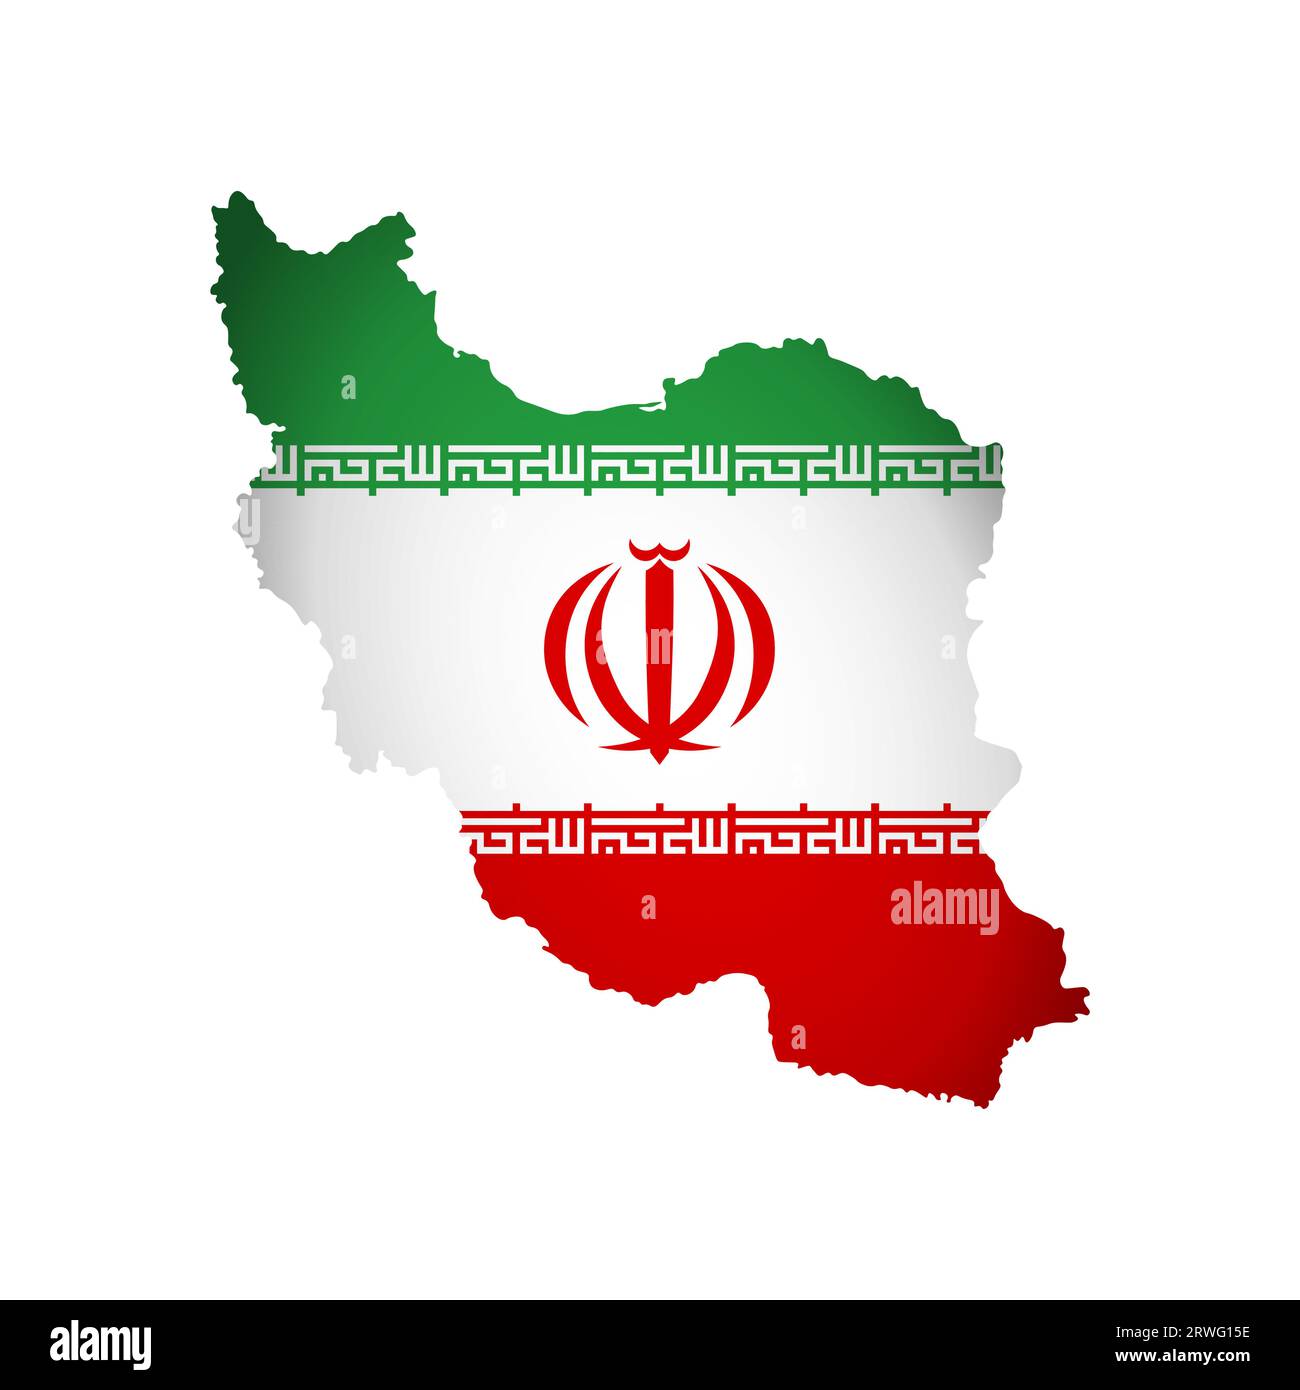 Vektor isolierte Illustration mit iranischer Nationalflagge mit Form der Karte der Islamischen Republik Iran (vereinfacht). Volume Shadow auf der Karte. Weißer Backgrou Stock Vektor